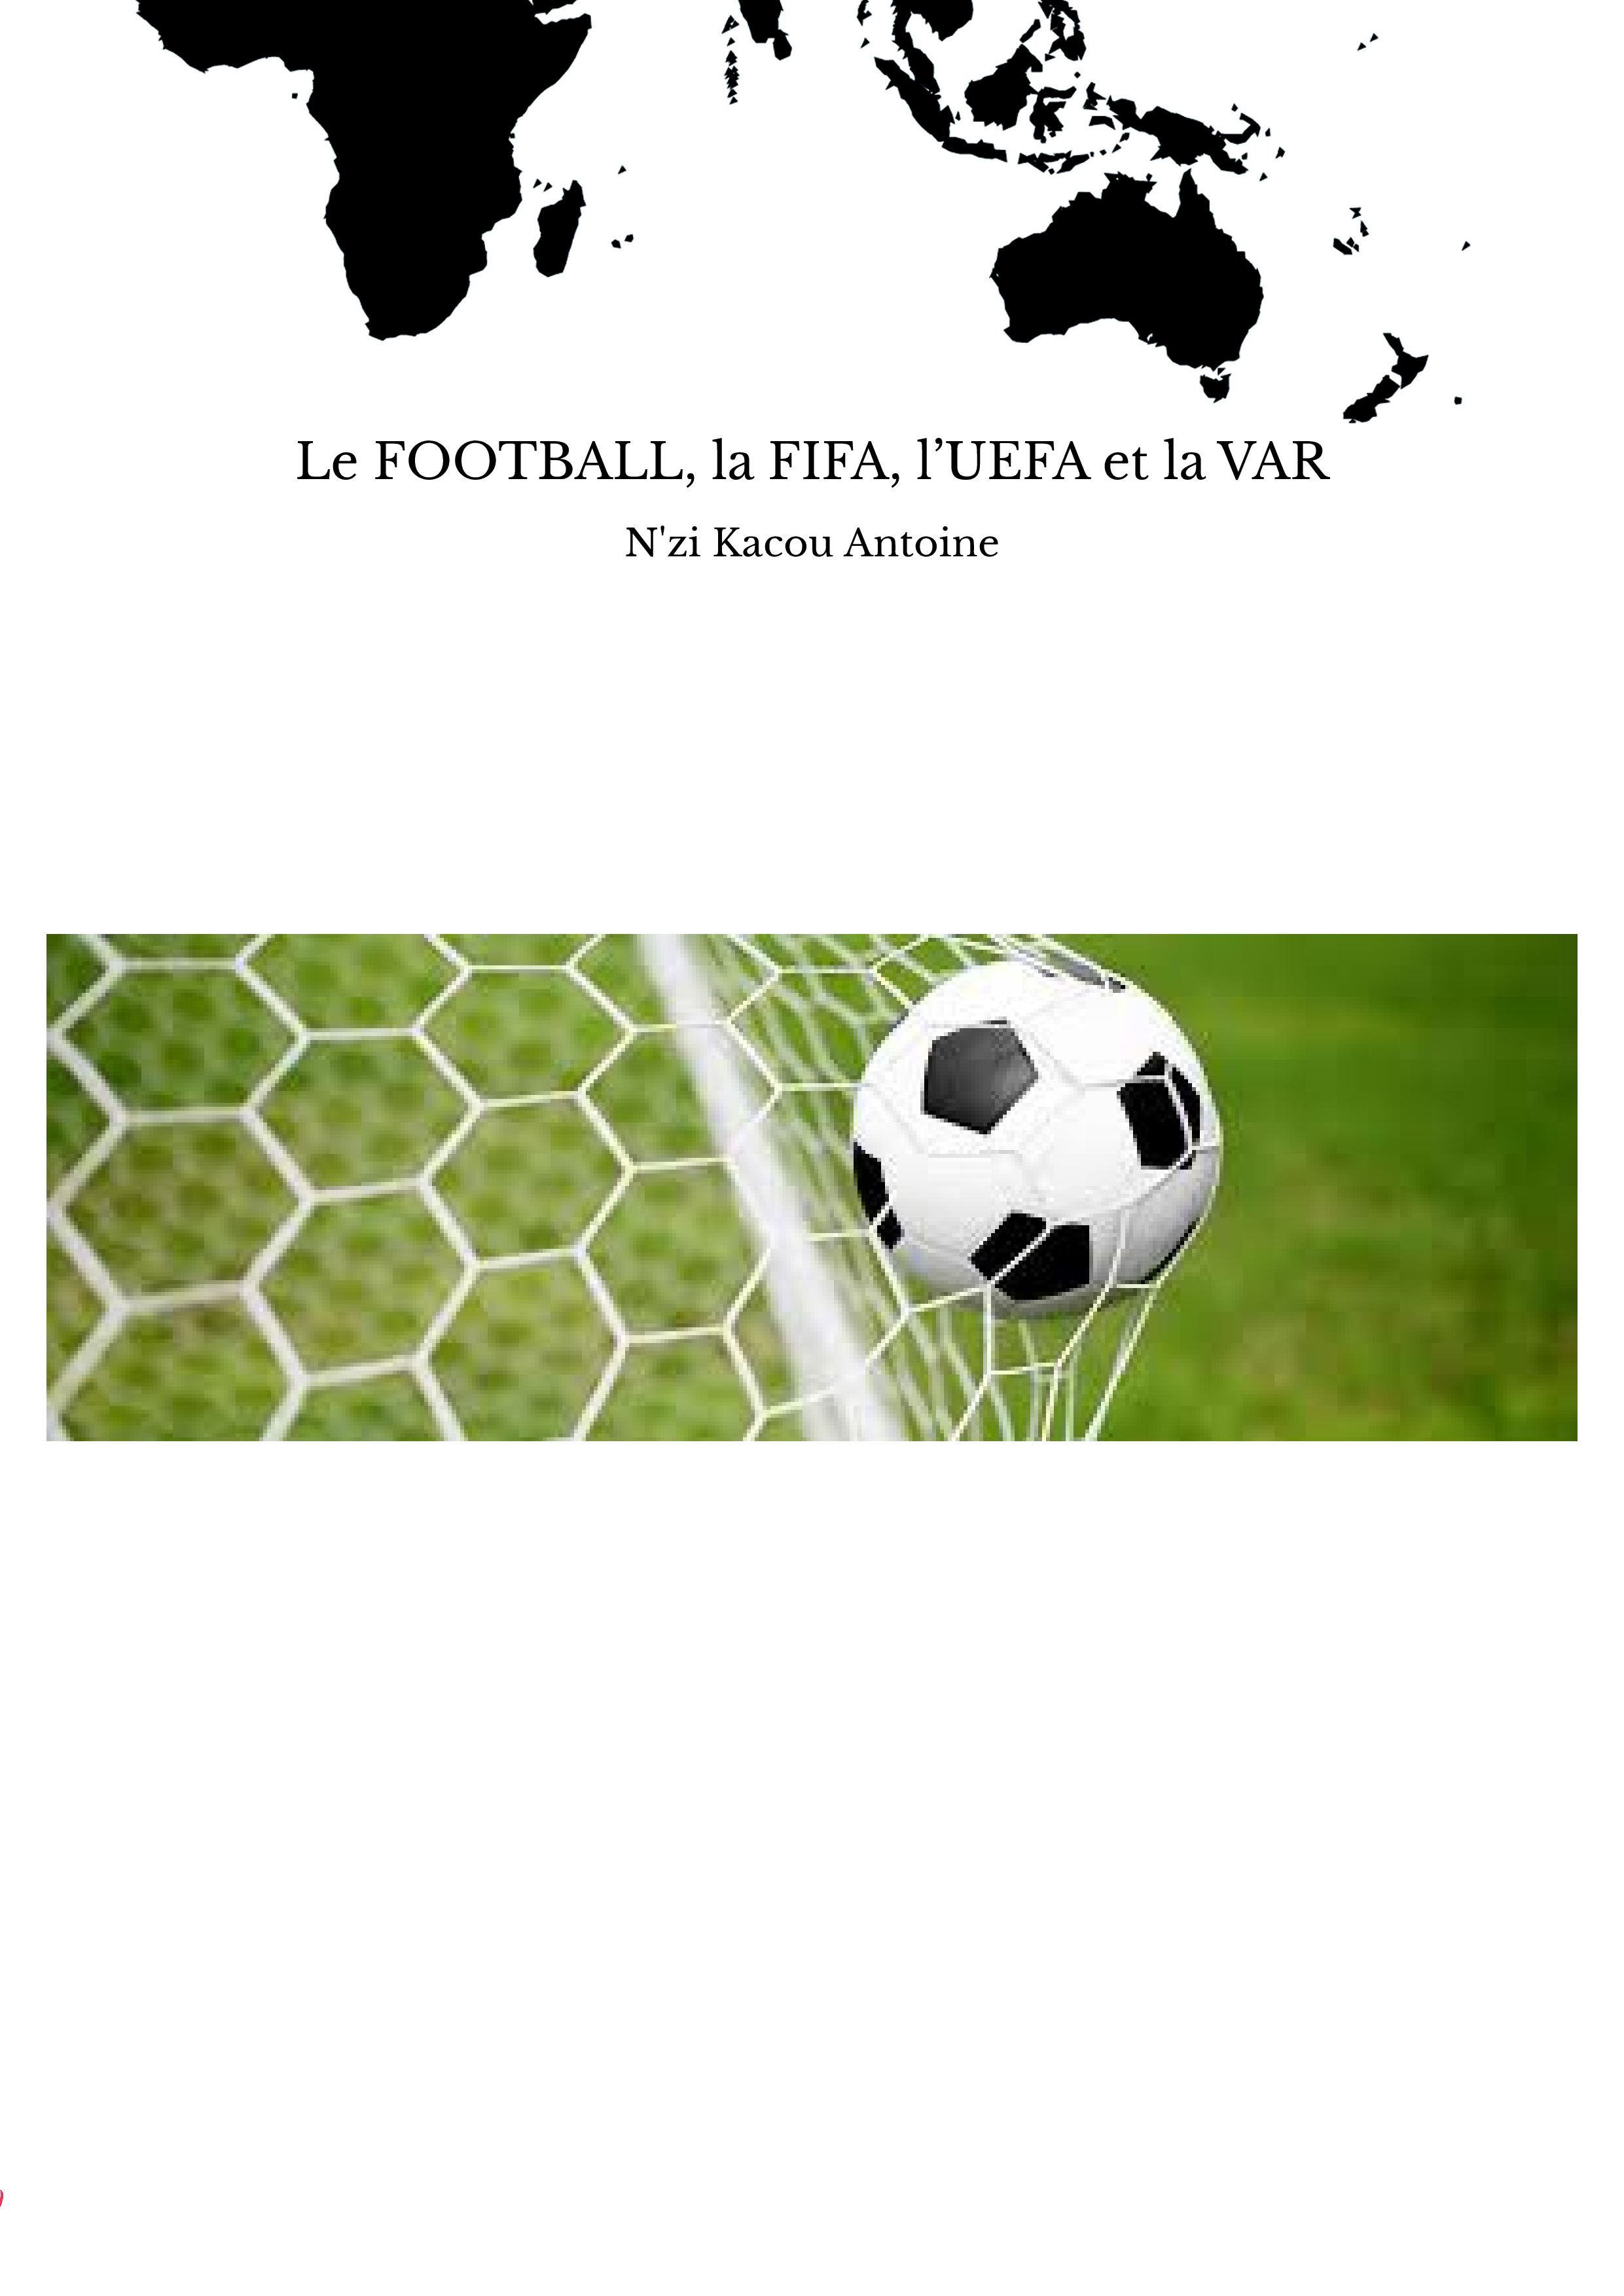 Le FOOTBALL, la FIFA, l’UEFA et la VAR